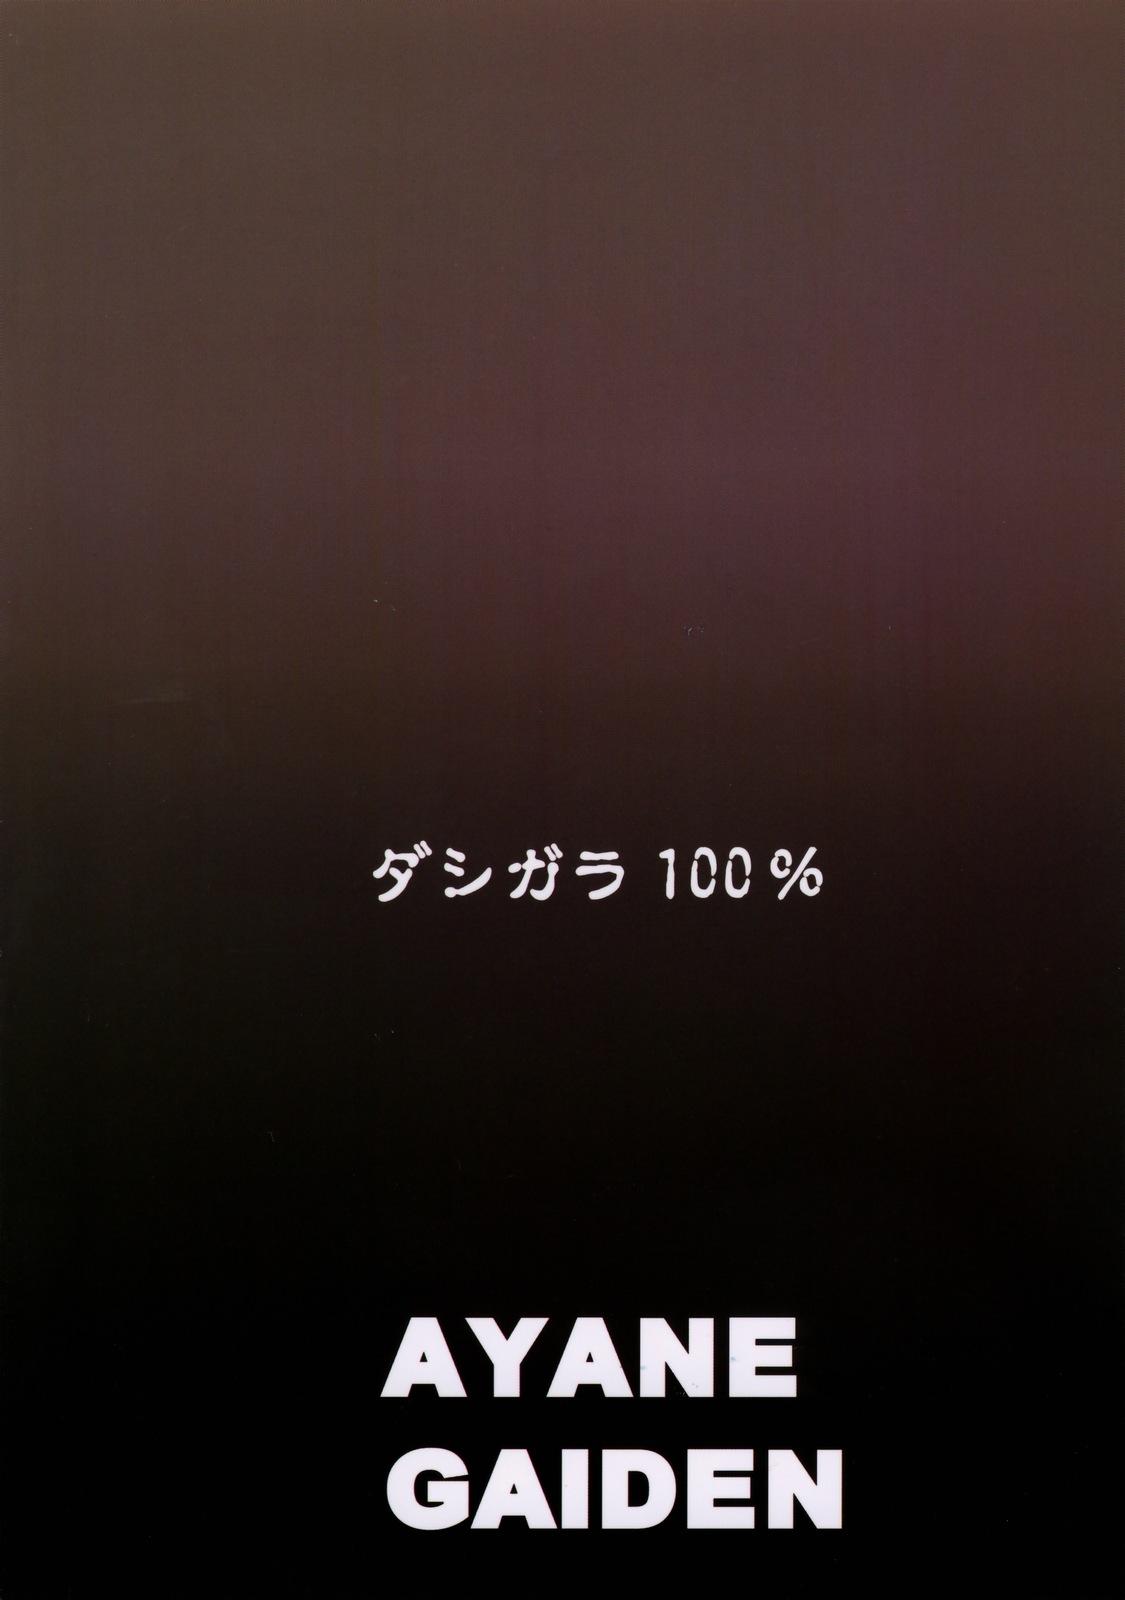 Ayane Gaiden 30